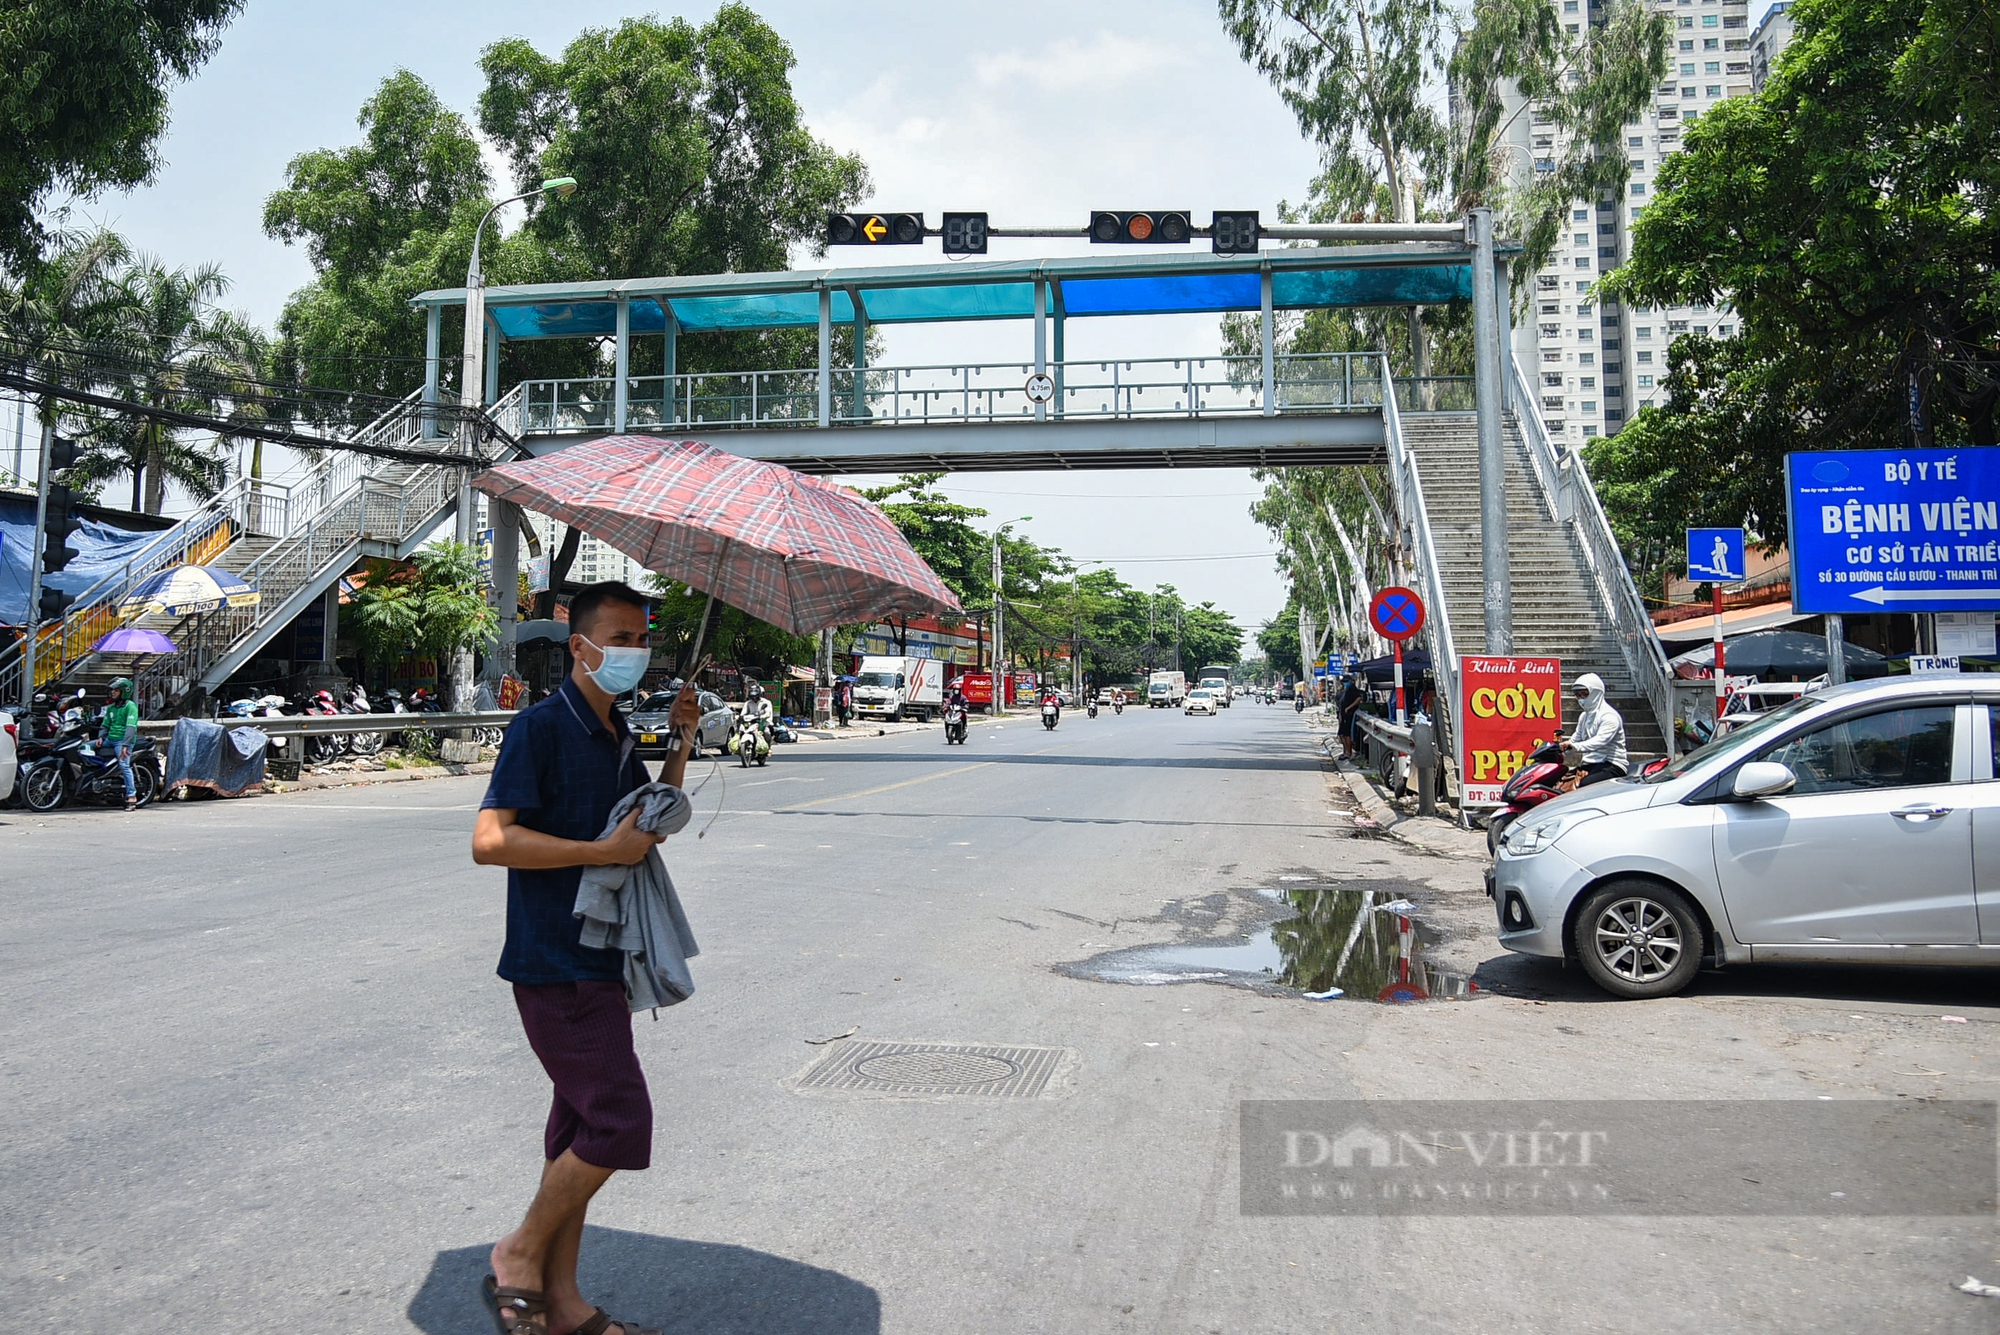 Tình trạng cầu vượt bộ hành ở Hà Nội: Nơi khang trang, chổ nhếch nhác mất mỹ quan đô thị - Ảnh 5.